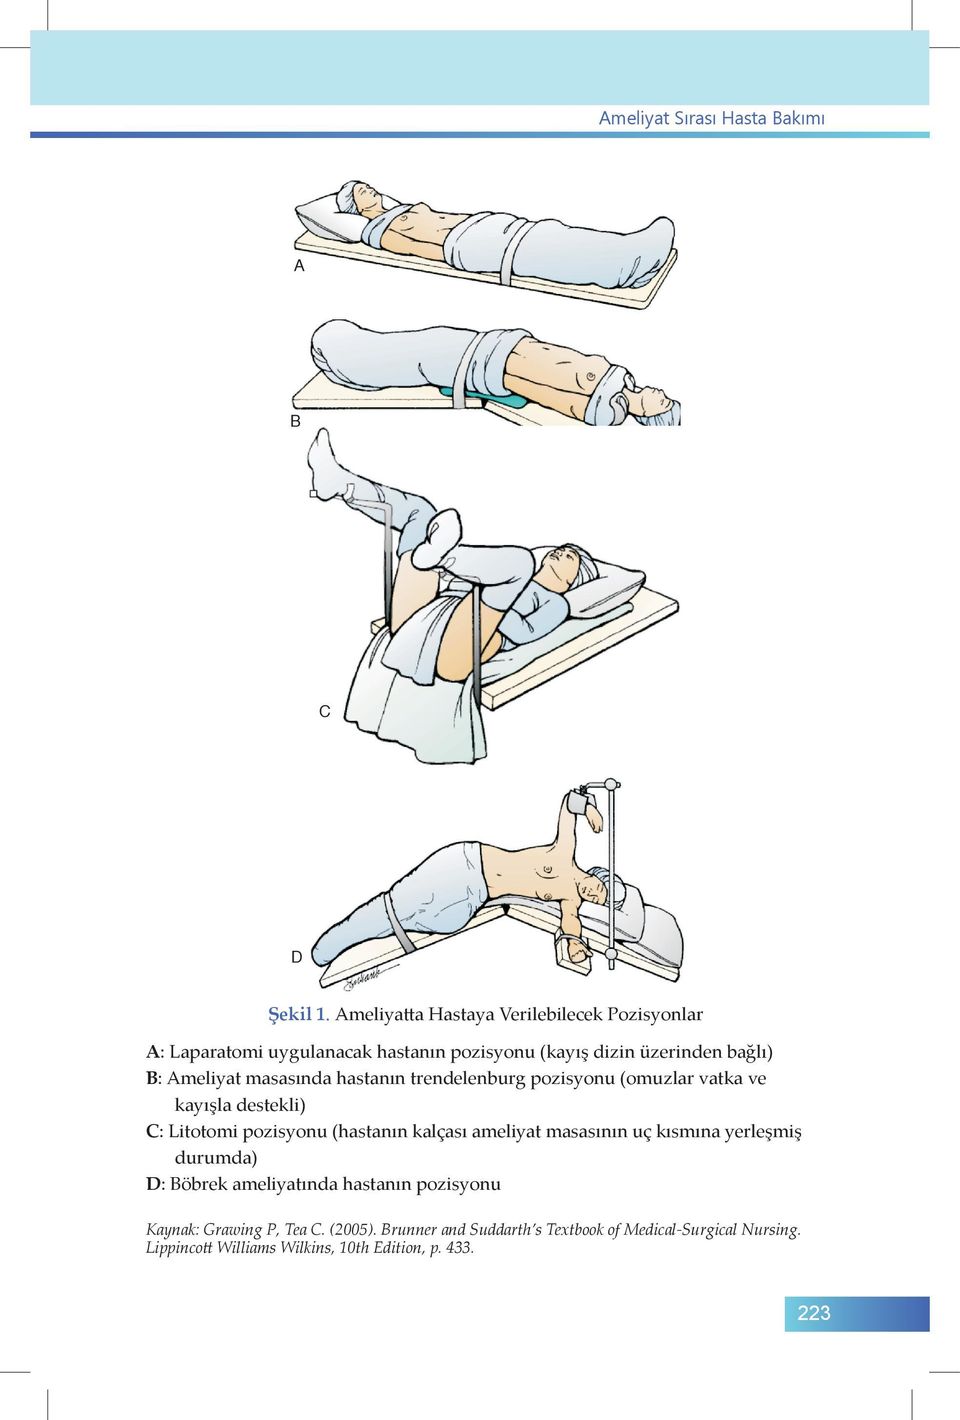 masasında hastanın trendelenburg pozisyonu (omuzlar vatka ve kayışla destekli) C: Litotomi pozisyonu (hastanın kalçası ameliyat